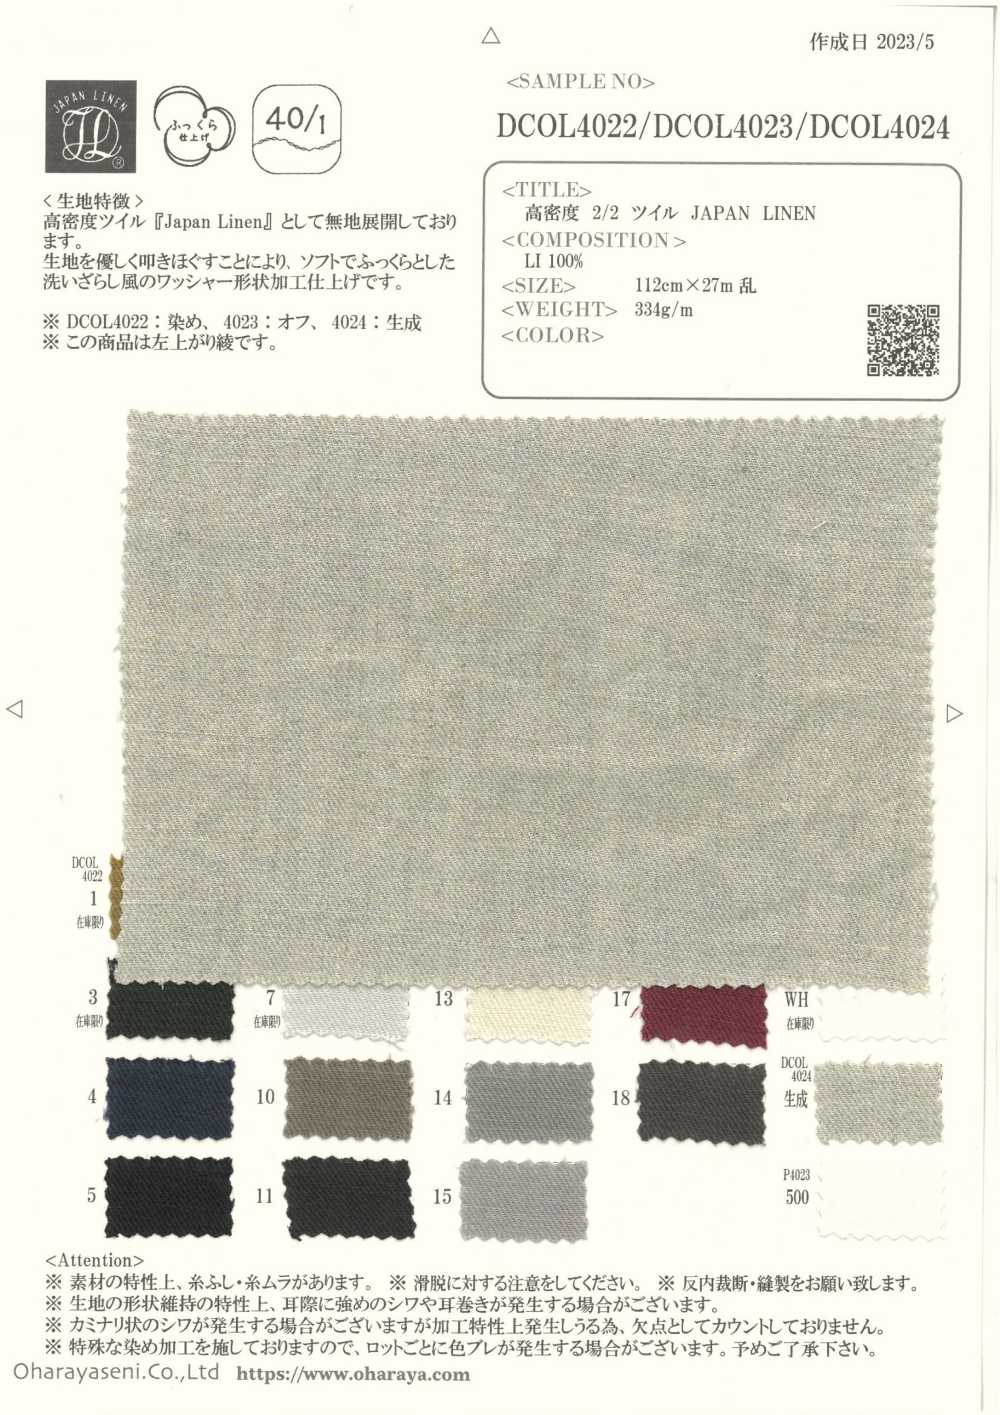 DCOL4023 LINHO JAPÃO DE Sarja 2/2 De Alta Densidade[Têxtil / Tecido] Oharayaseni